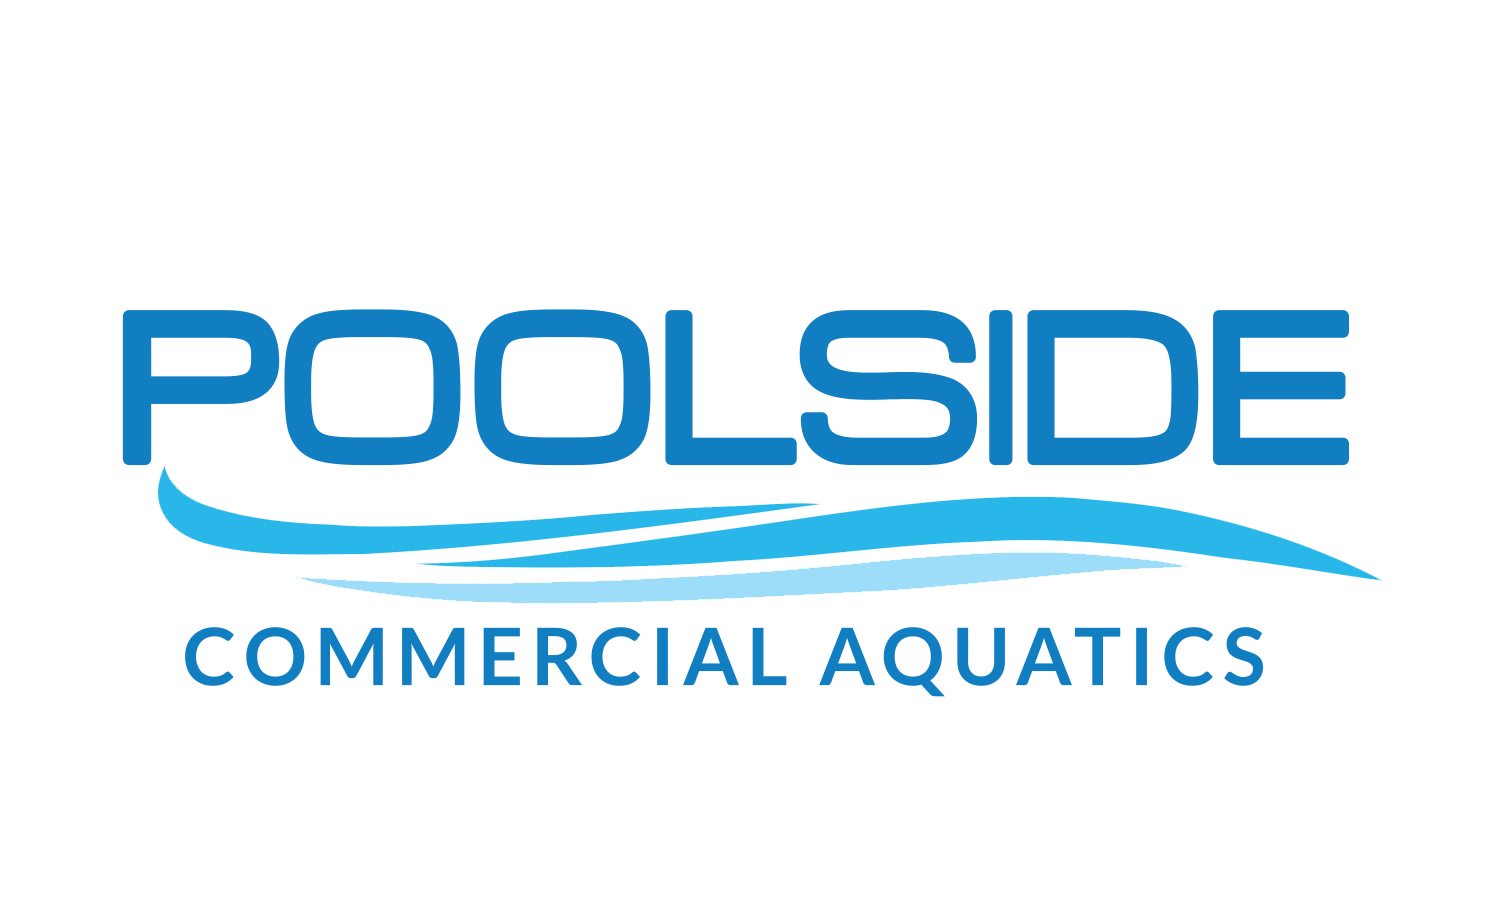 Poolside Commercial Aquatics